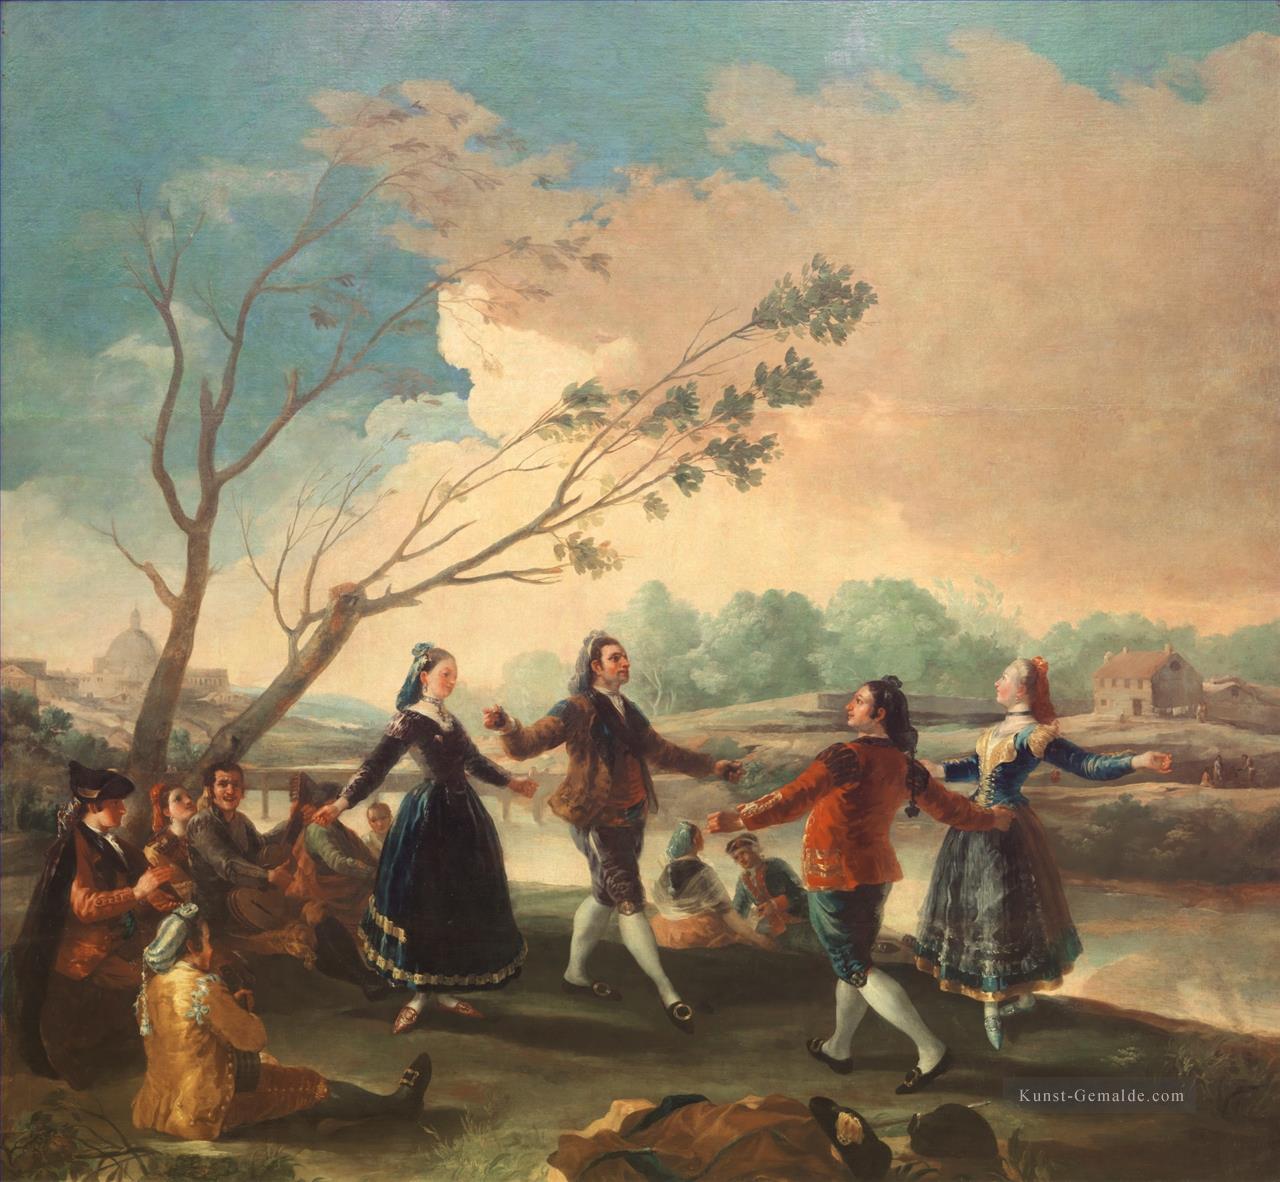 Tanz der Majos an die Banken von Manzanares Francisco de Goya Ölgemälde